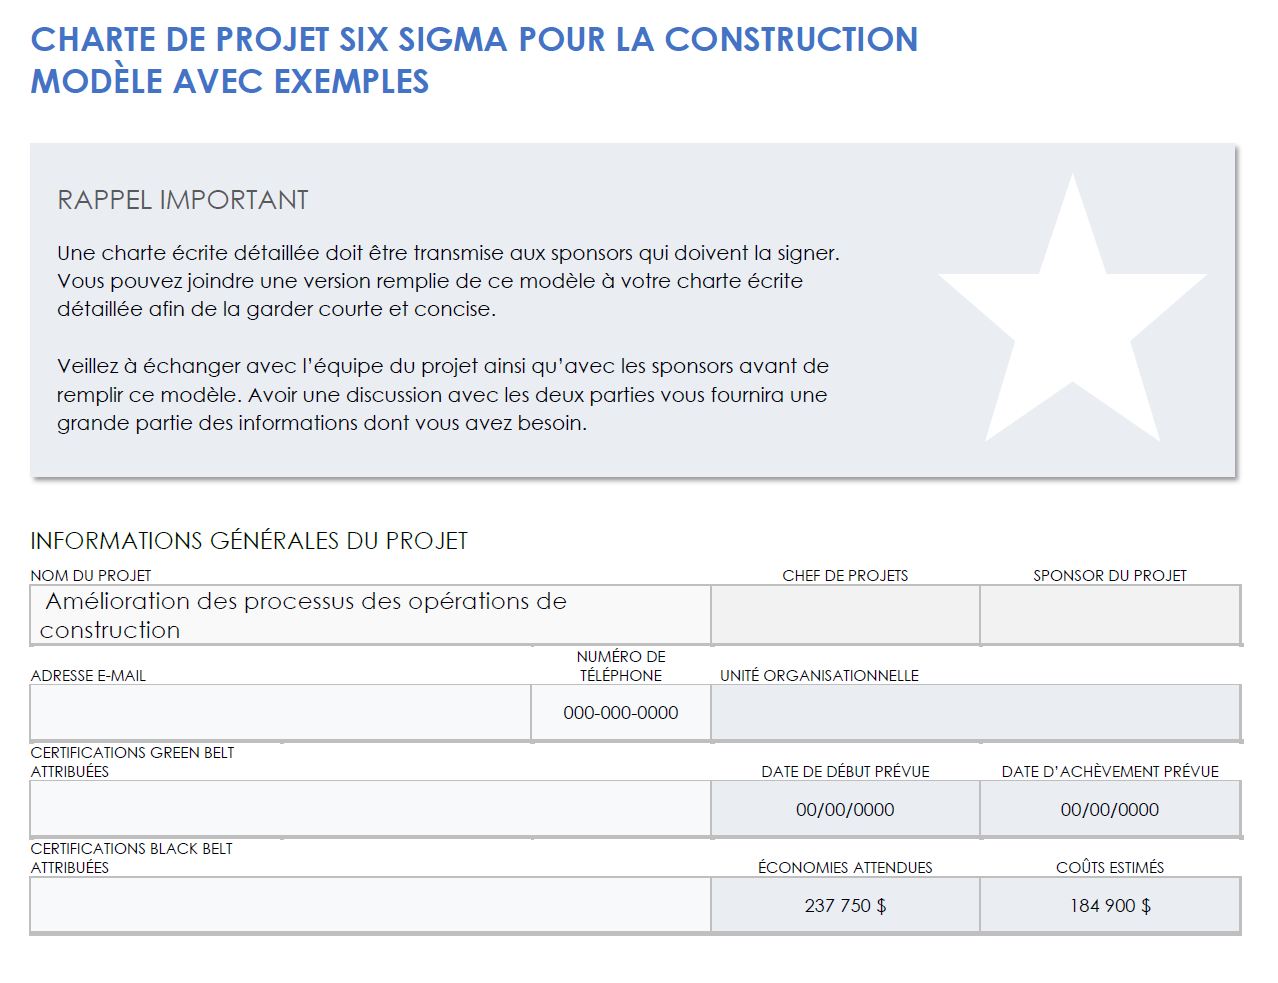 Exemple de charte de projet Construction Six Sigma